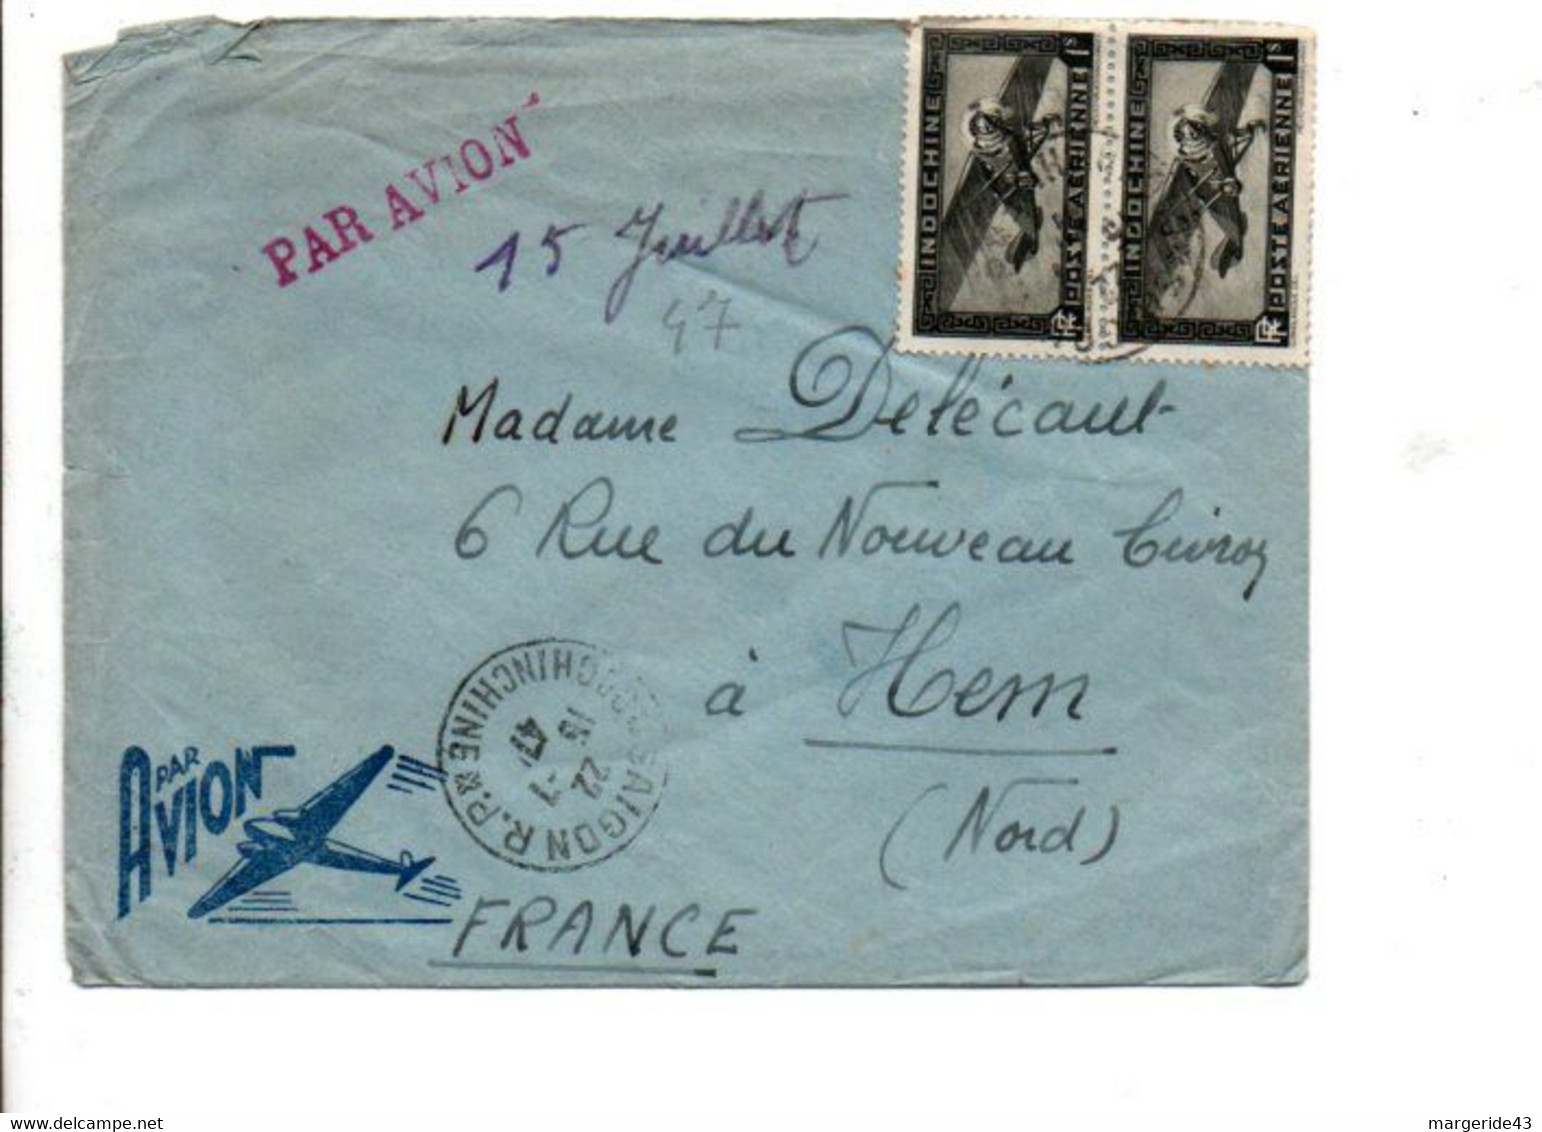 COCHINCHINE AFFRANCHISSEMENT COMPOSE SUR LETTRE DE SAÏGON POUR LA FRANCE 1947 - Briefe U. Dokumente